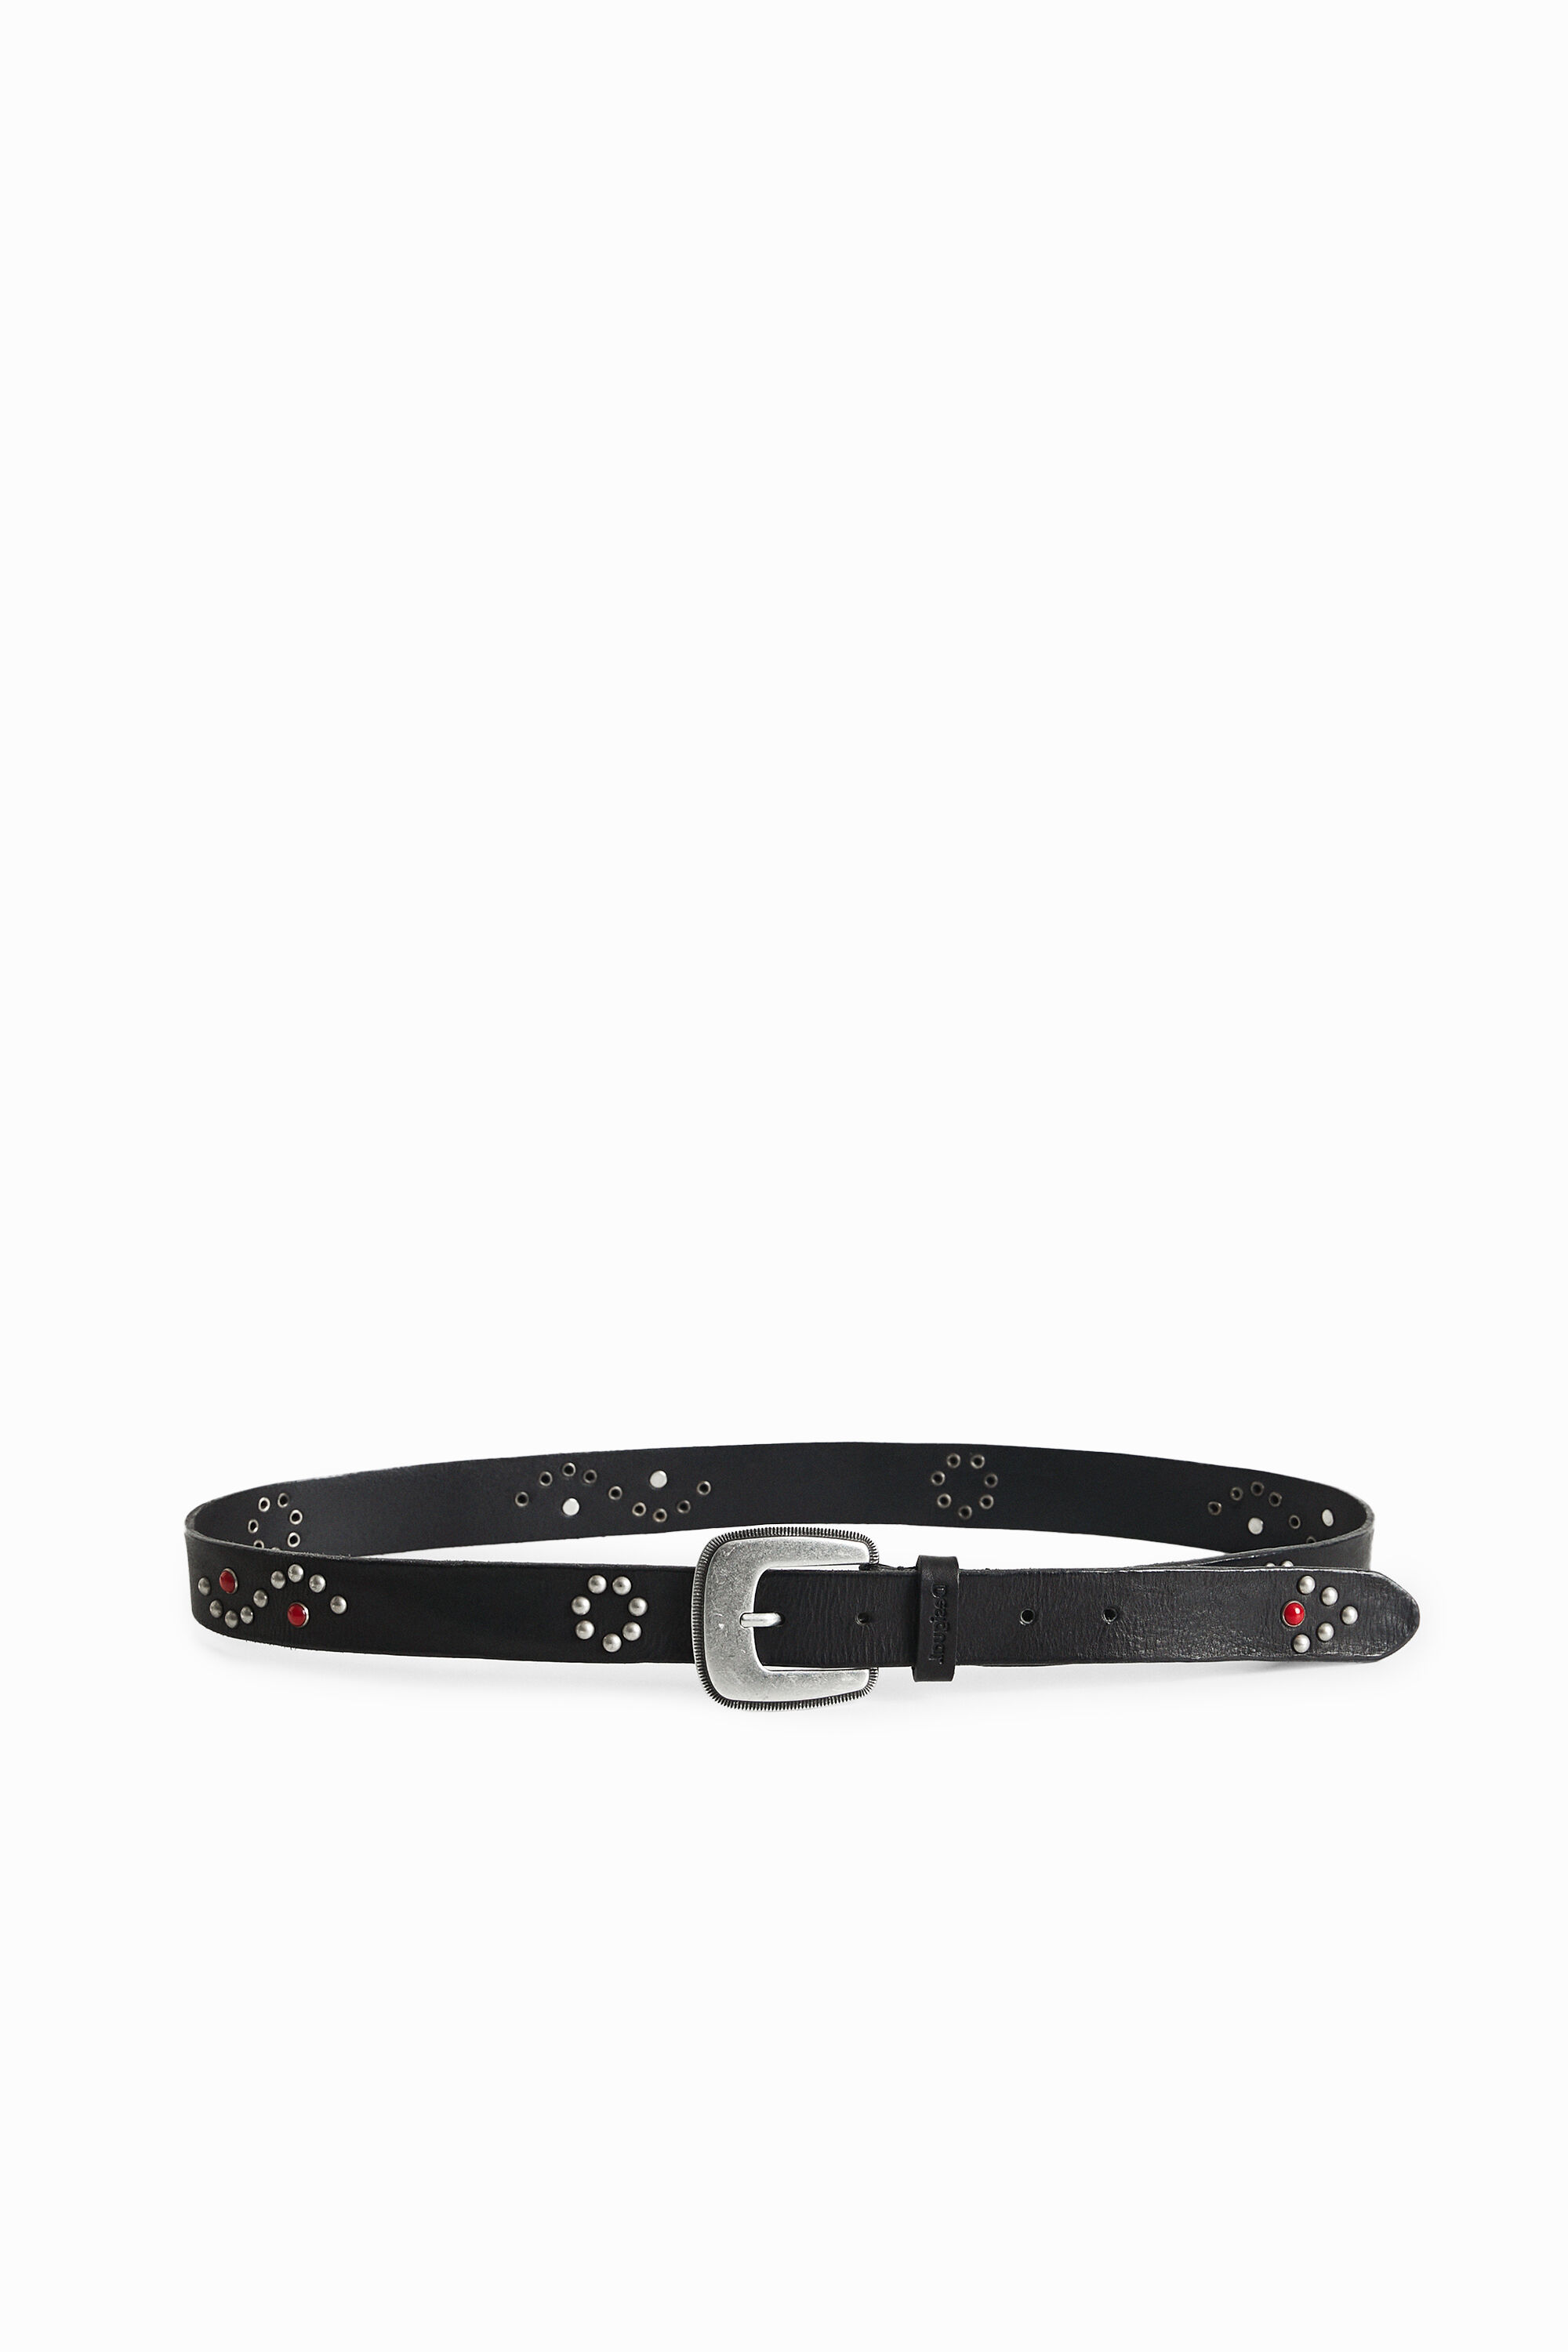 Studded leather belt - BLACK - 95